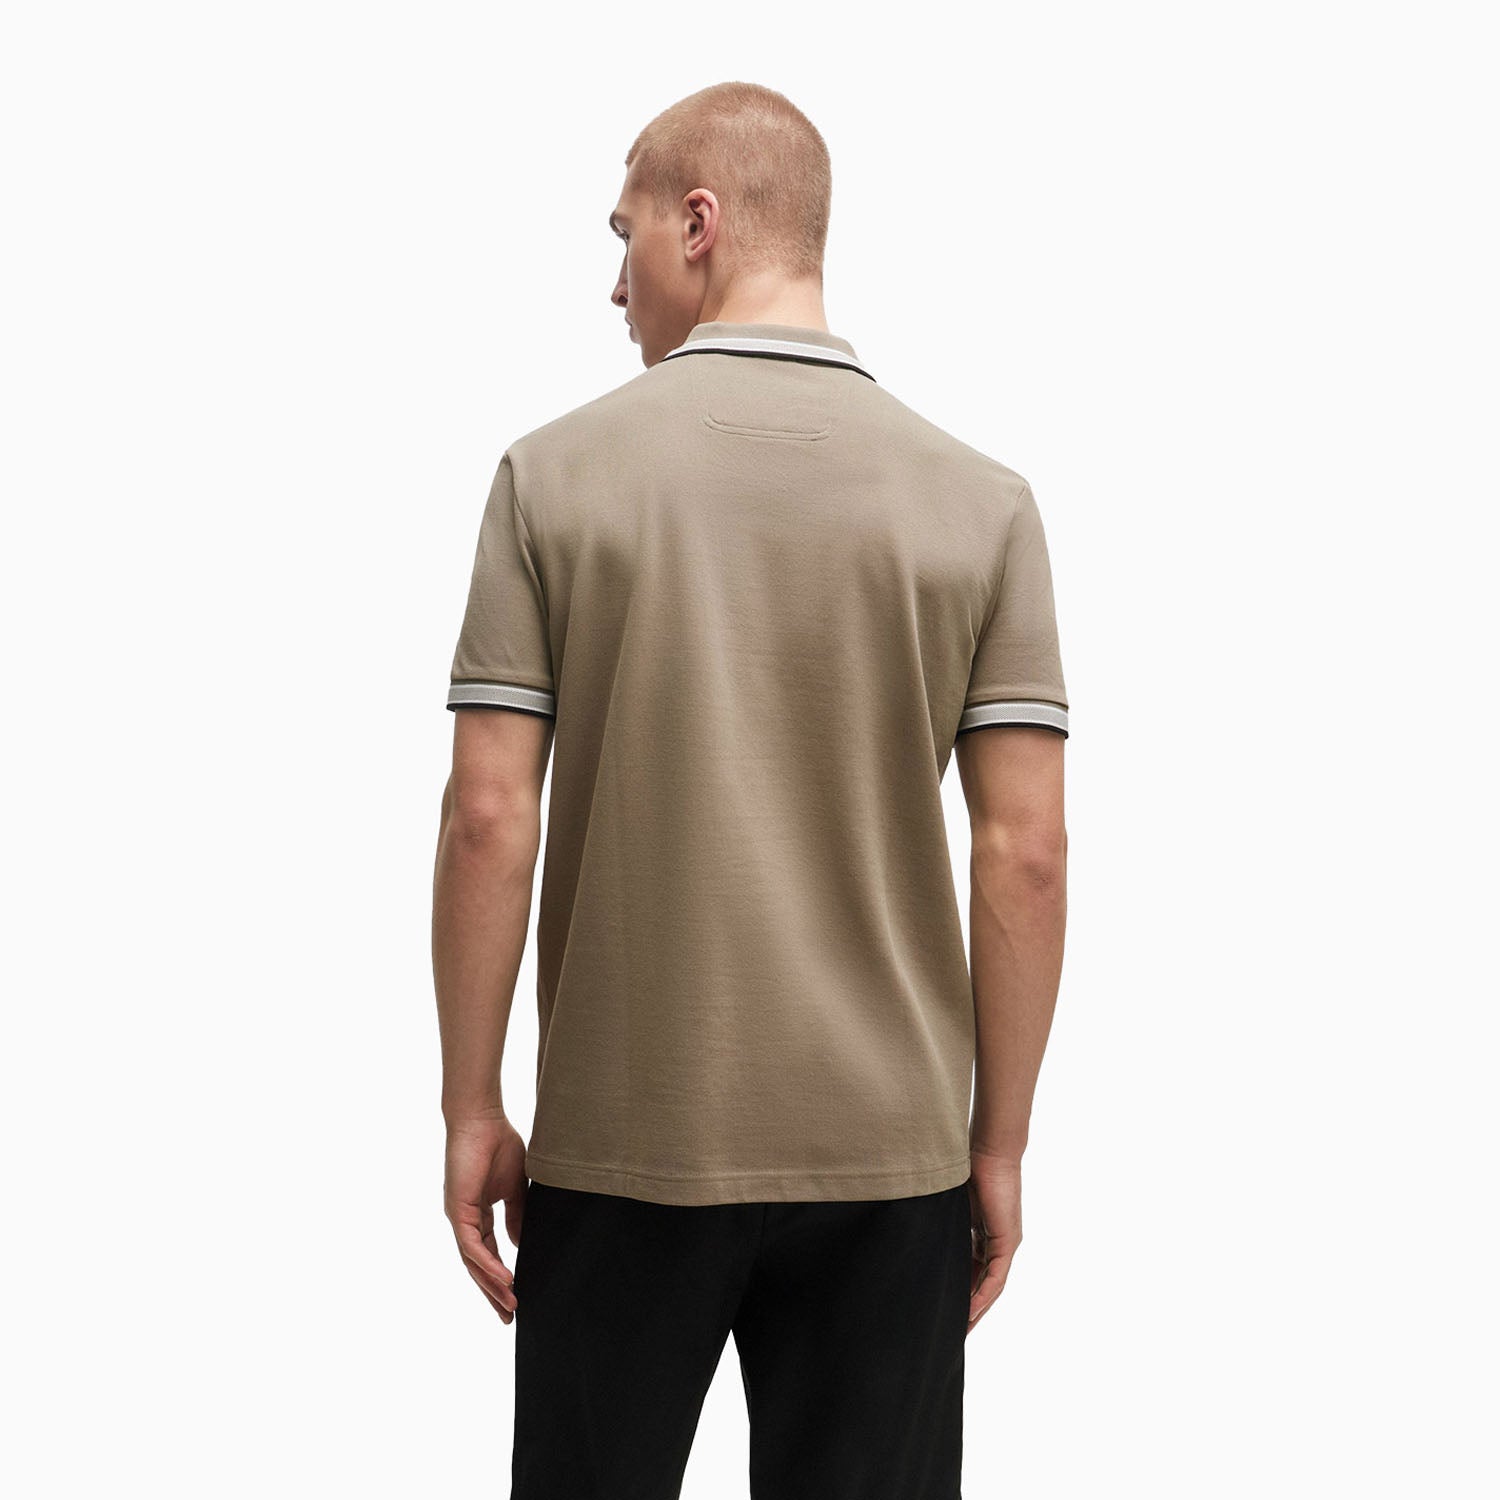 hugo-boss-mens-cotton-pique-polo-shirt-with-contrast-logo-50469055-334